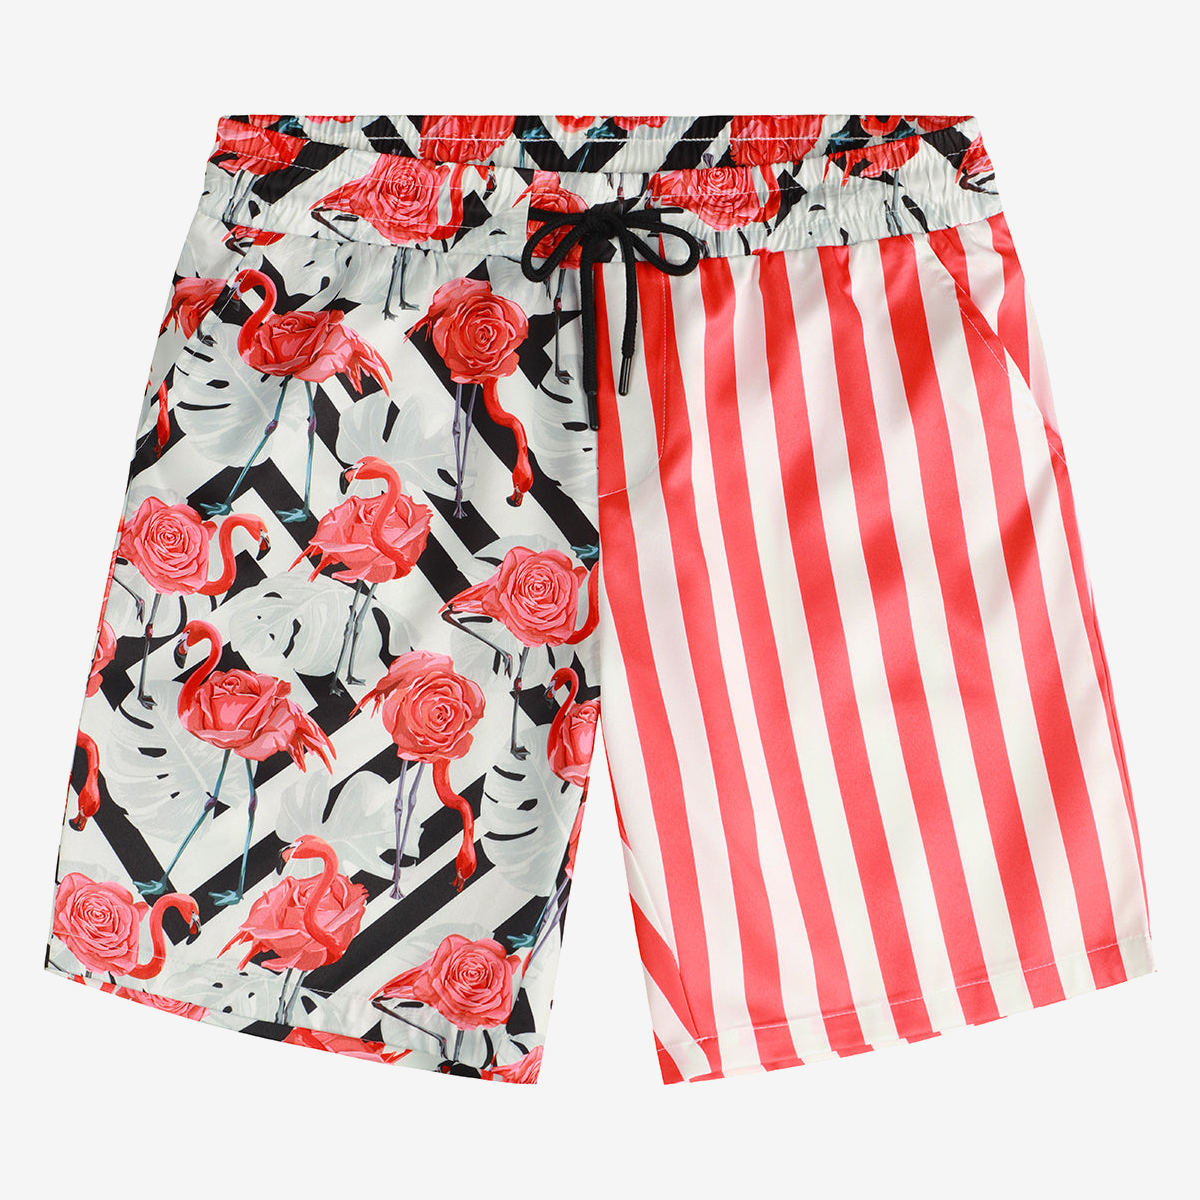 Men's Flamingo and Pink Striped Animal Aloha Beach Hawaiian Shorts